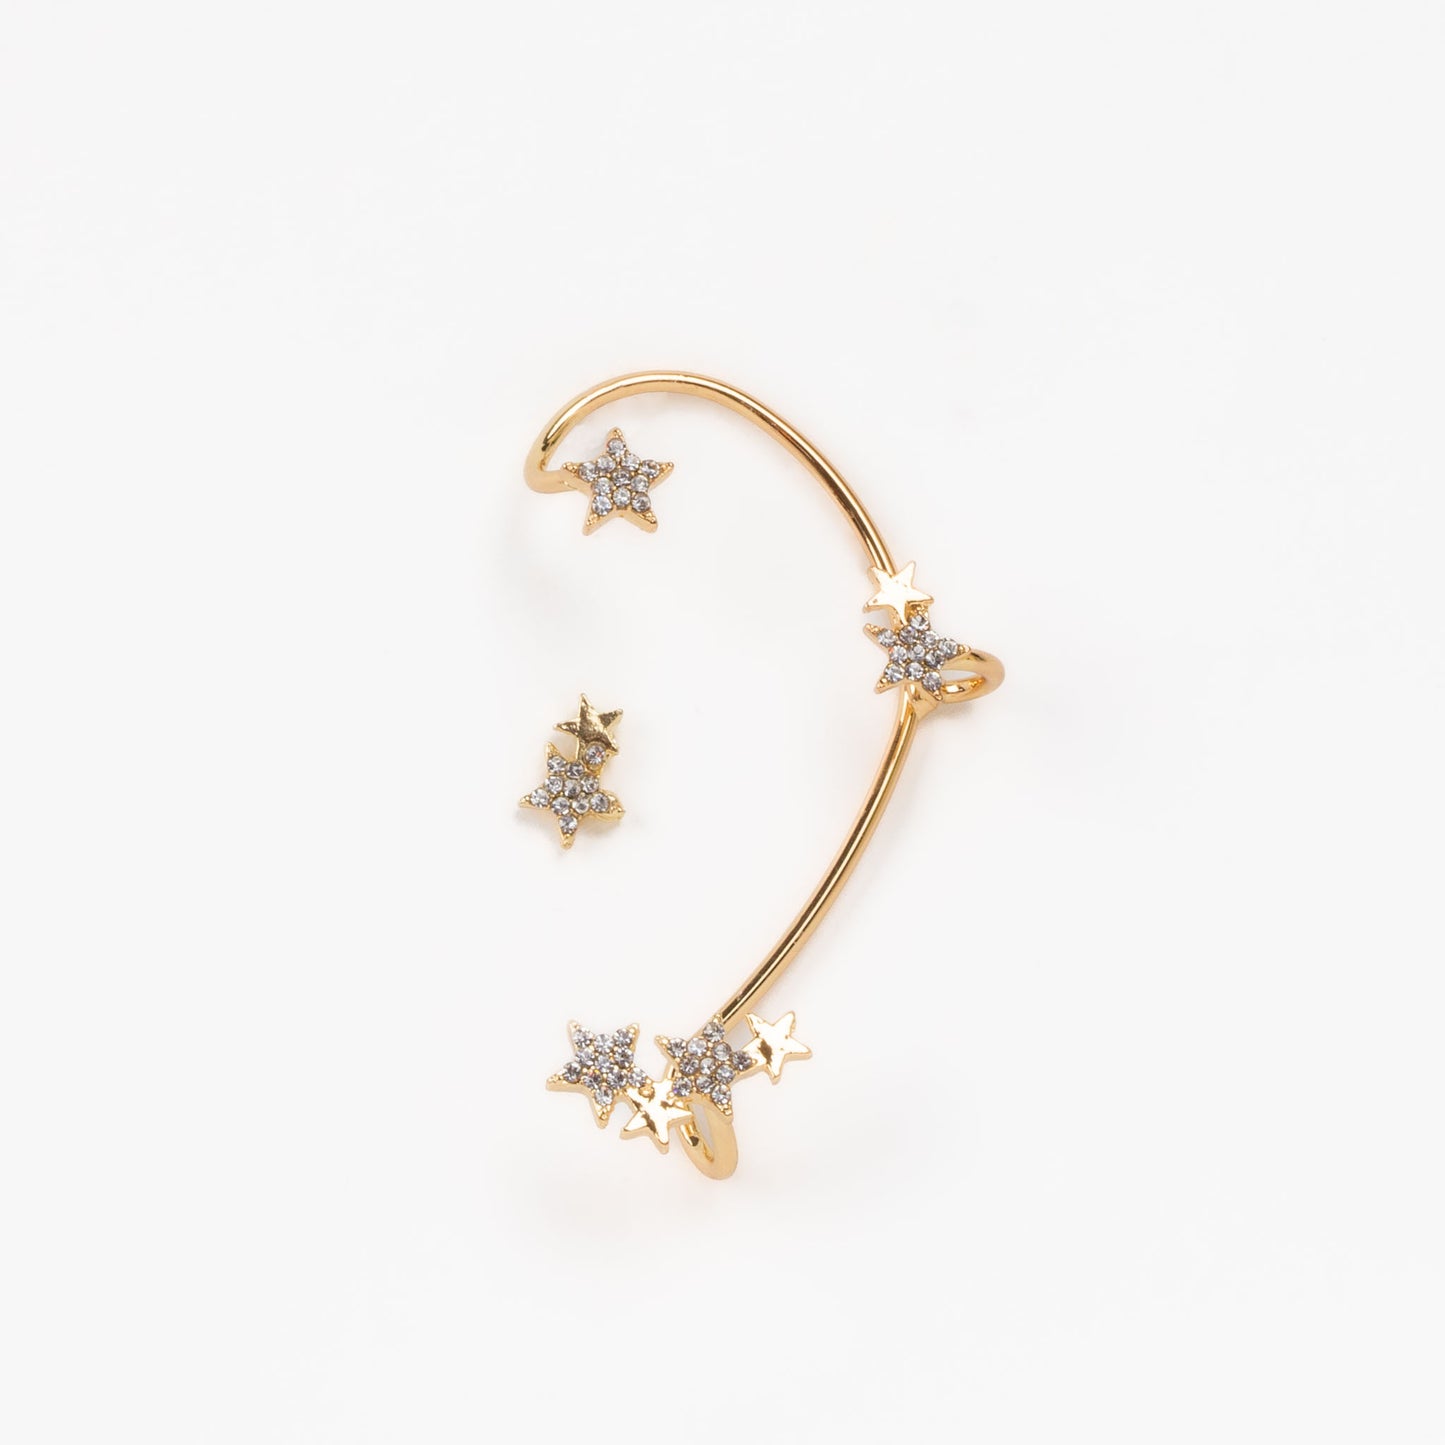 Cercel ear cuff cu ornamente în formă de stea, set 2 buc - Auriu cosmic